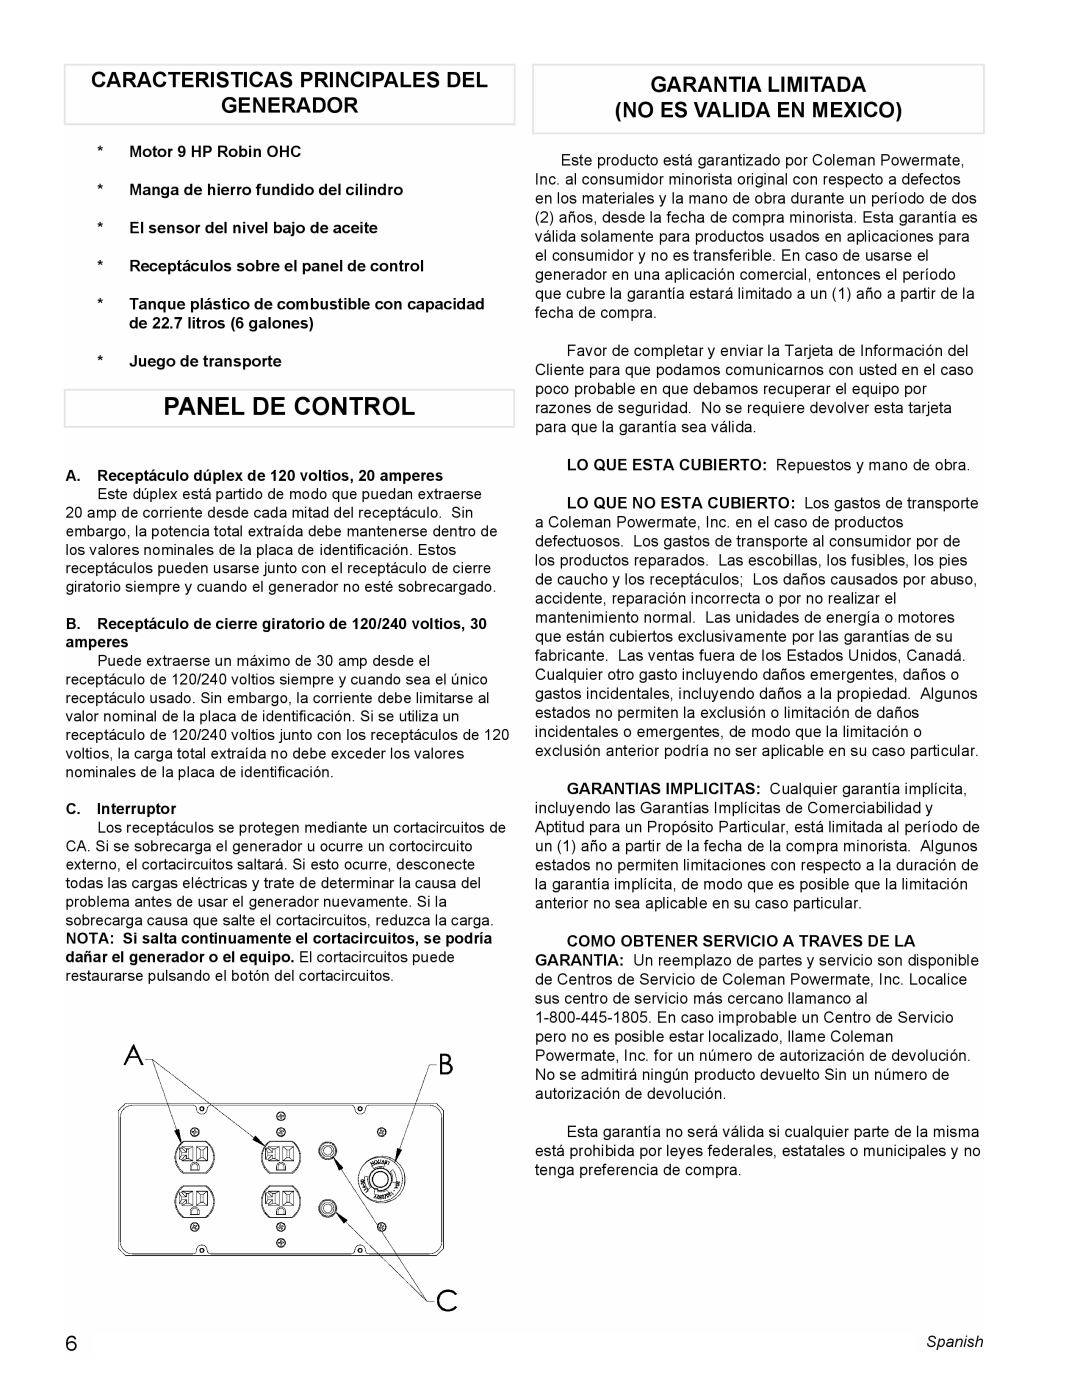 Powermate PM0434600 Panel De Control, Caracteristicas Principales Del Generador, Garantia Limitada No Es Valida En Mexico 